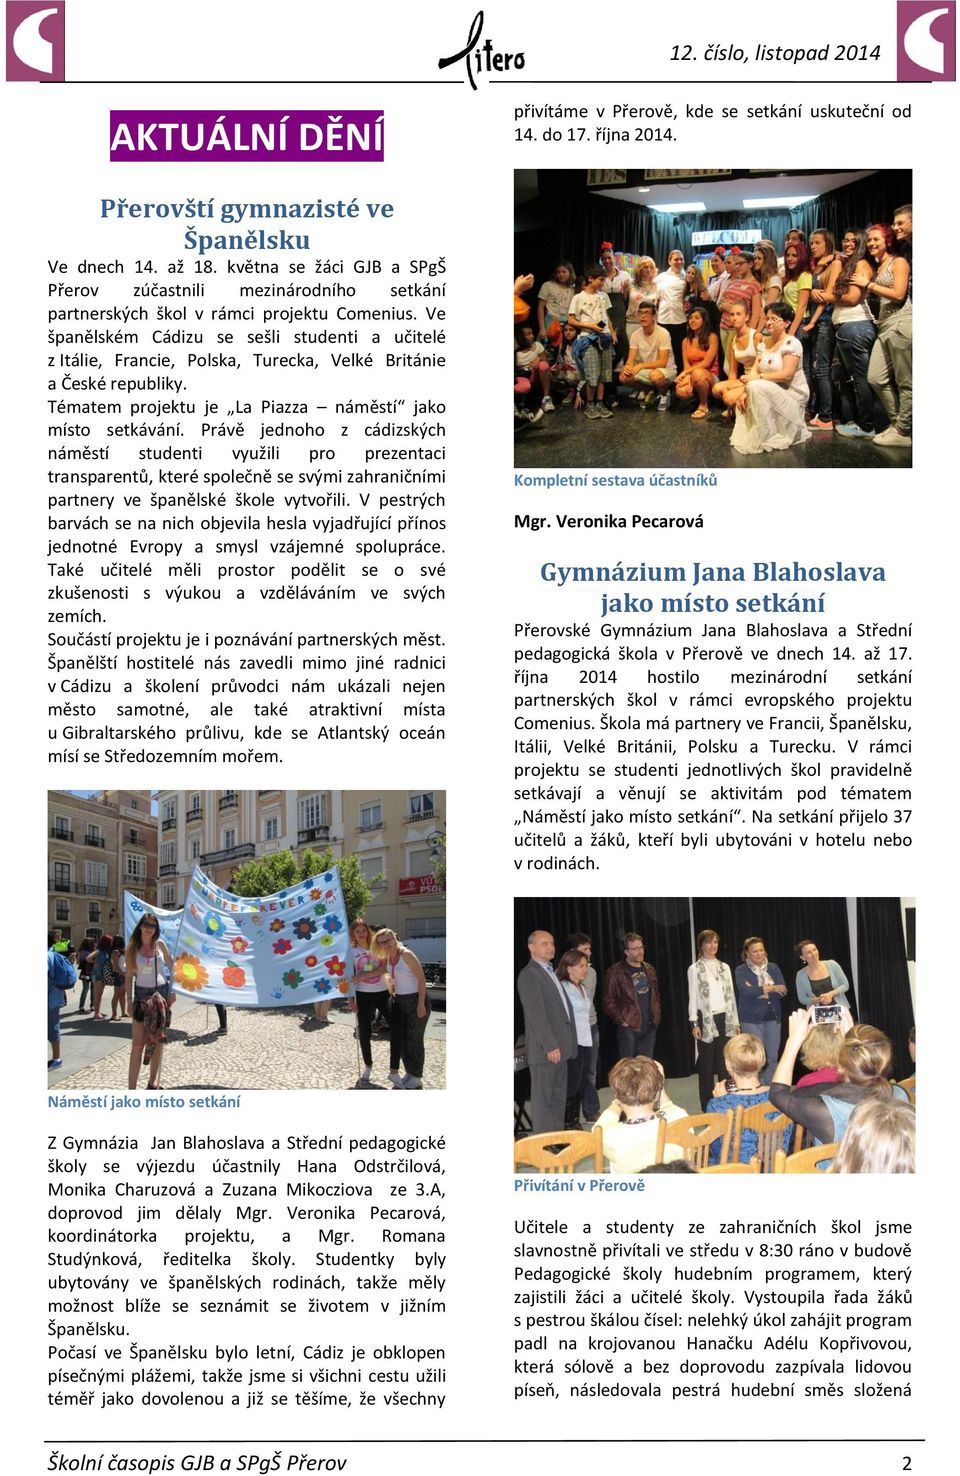 Právě jednoho z cádizských náměstí studenti využili pro prezentaci transparentů, které společně se svými zahraničními partnery ve španělské škole vytvořili.